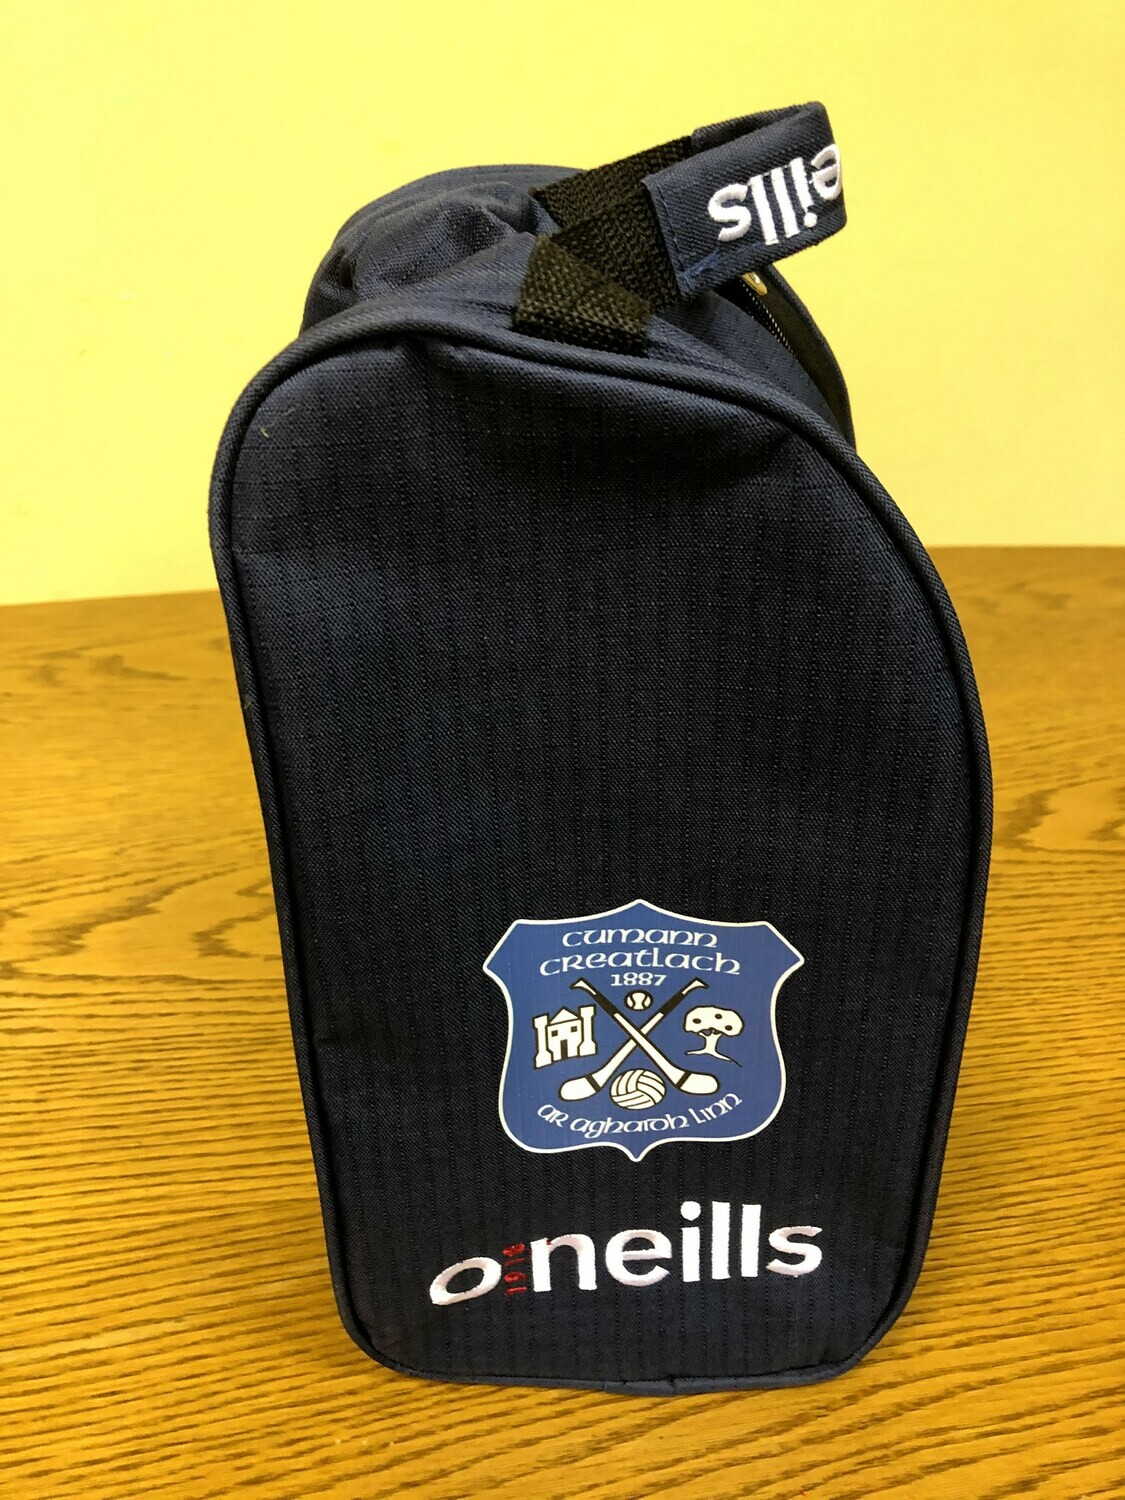 O'Neill's Bootbag